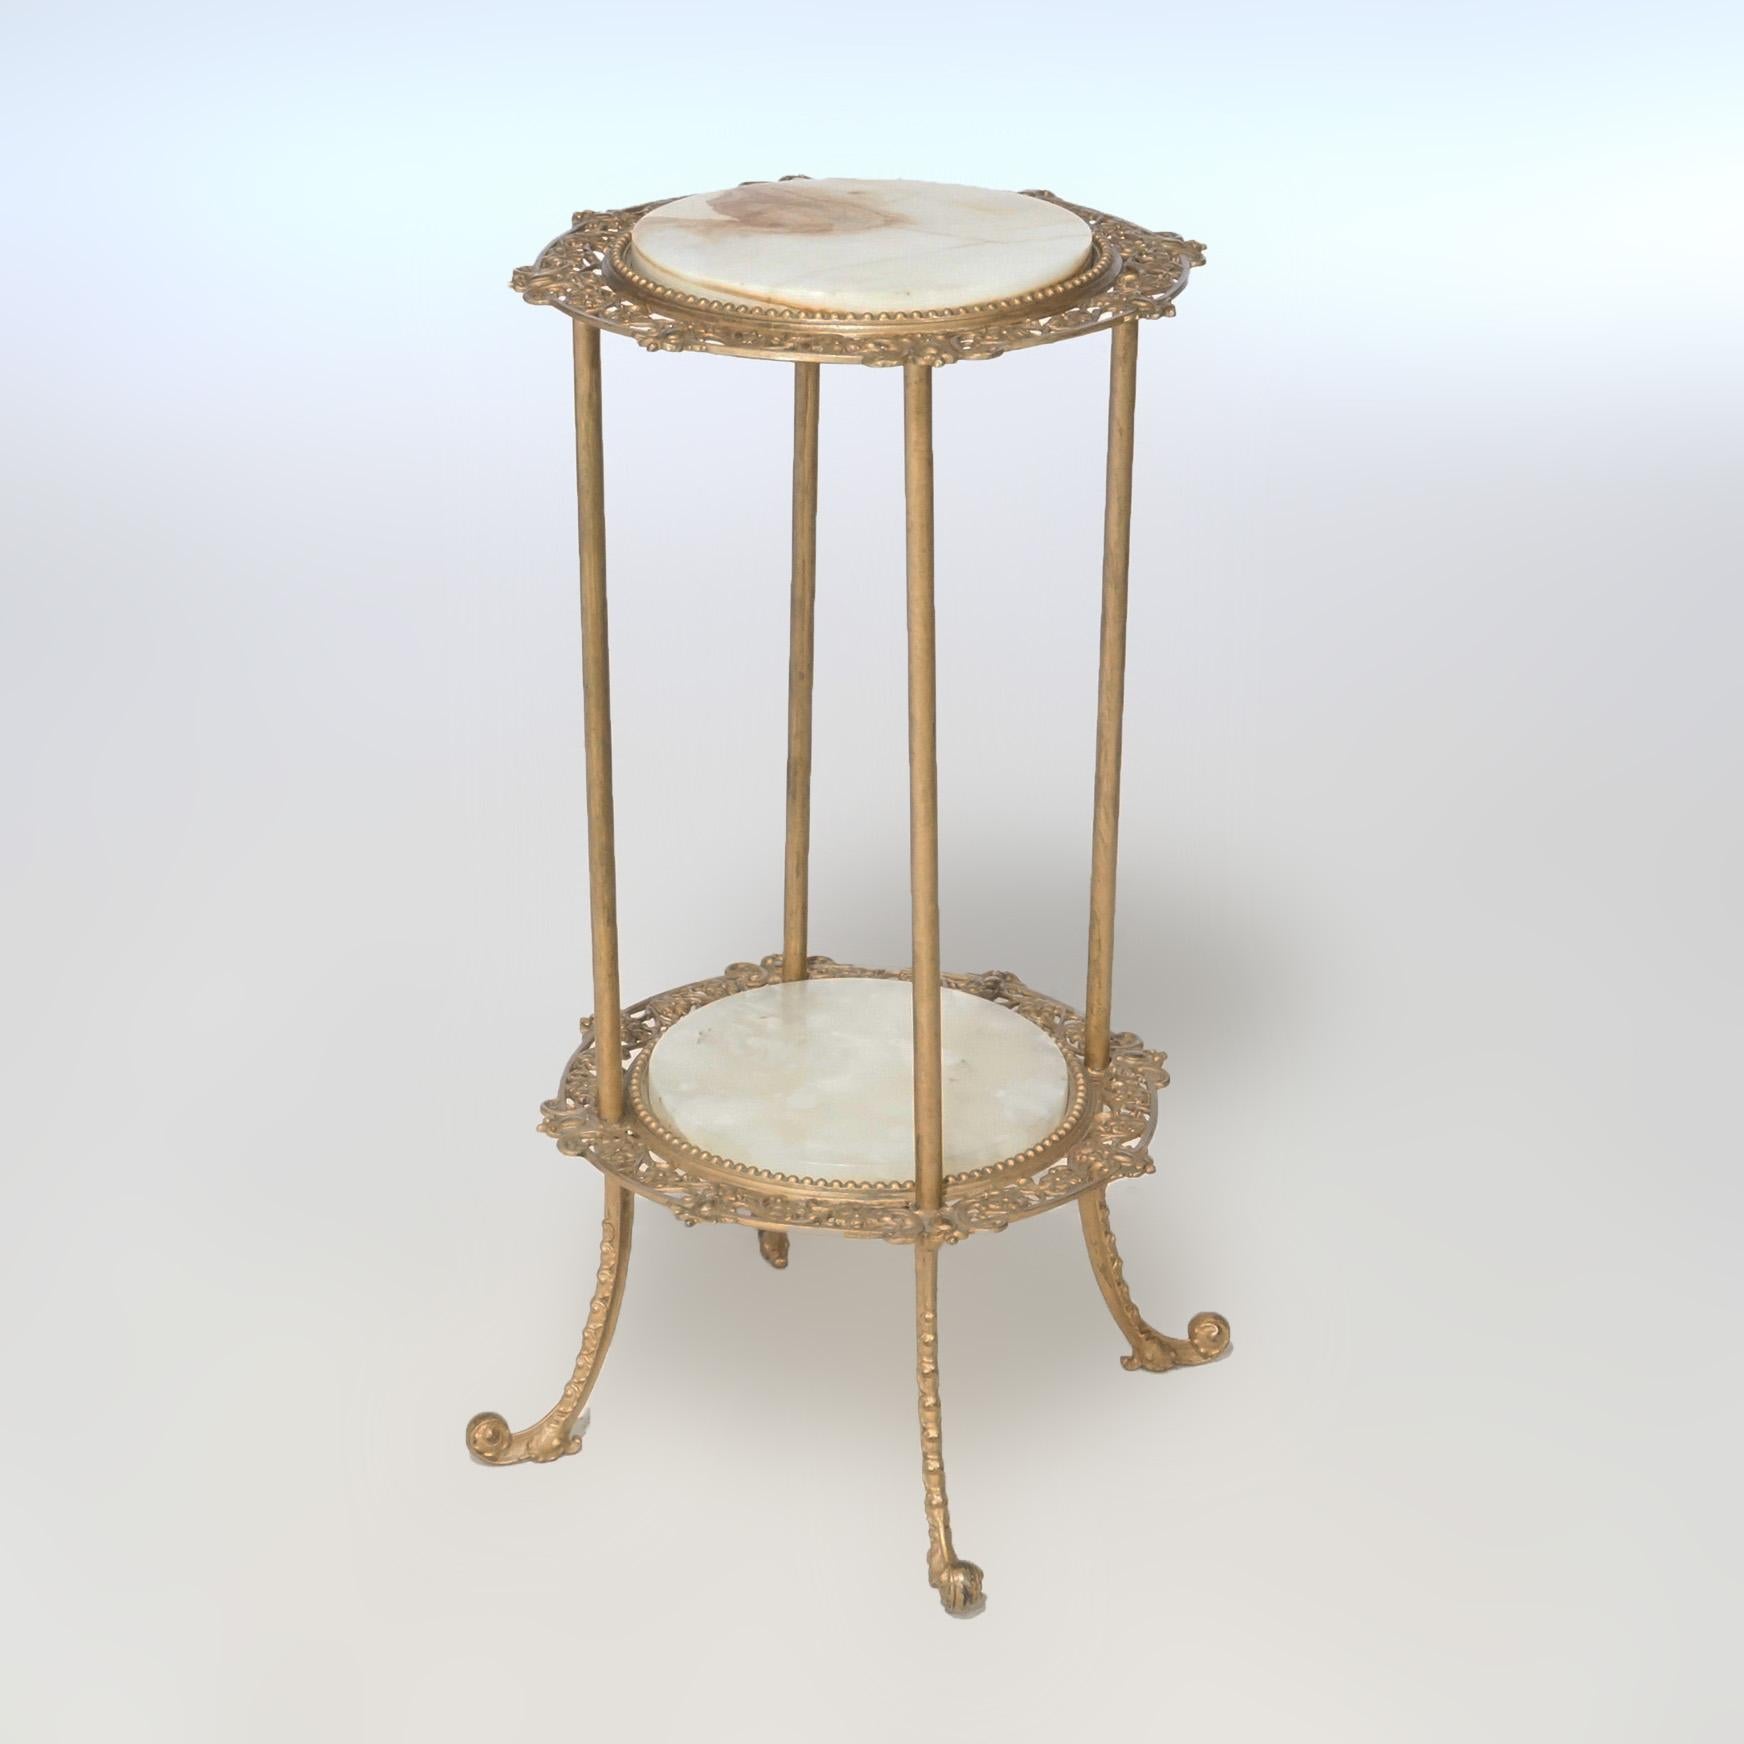 Un ancien stand victorien offre un cadre en métal doré avec des inserts en onyx et des cadres de feuillage en fonte dorée, vers 1890.

Mesures - 30 